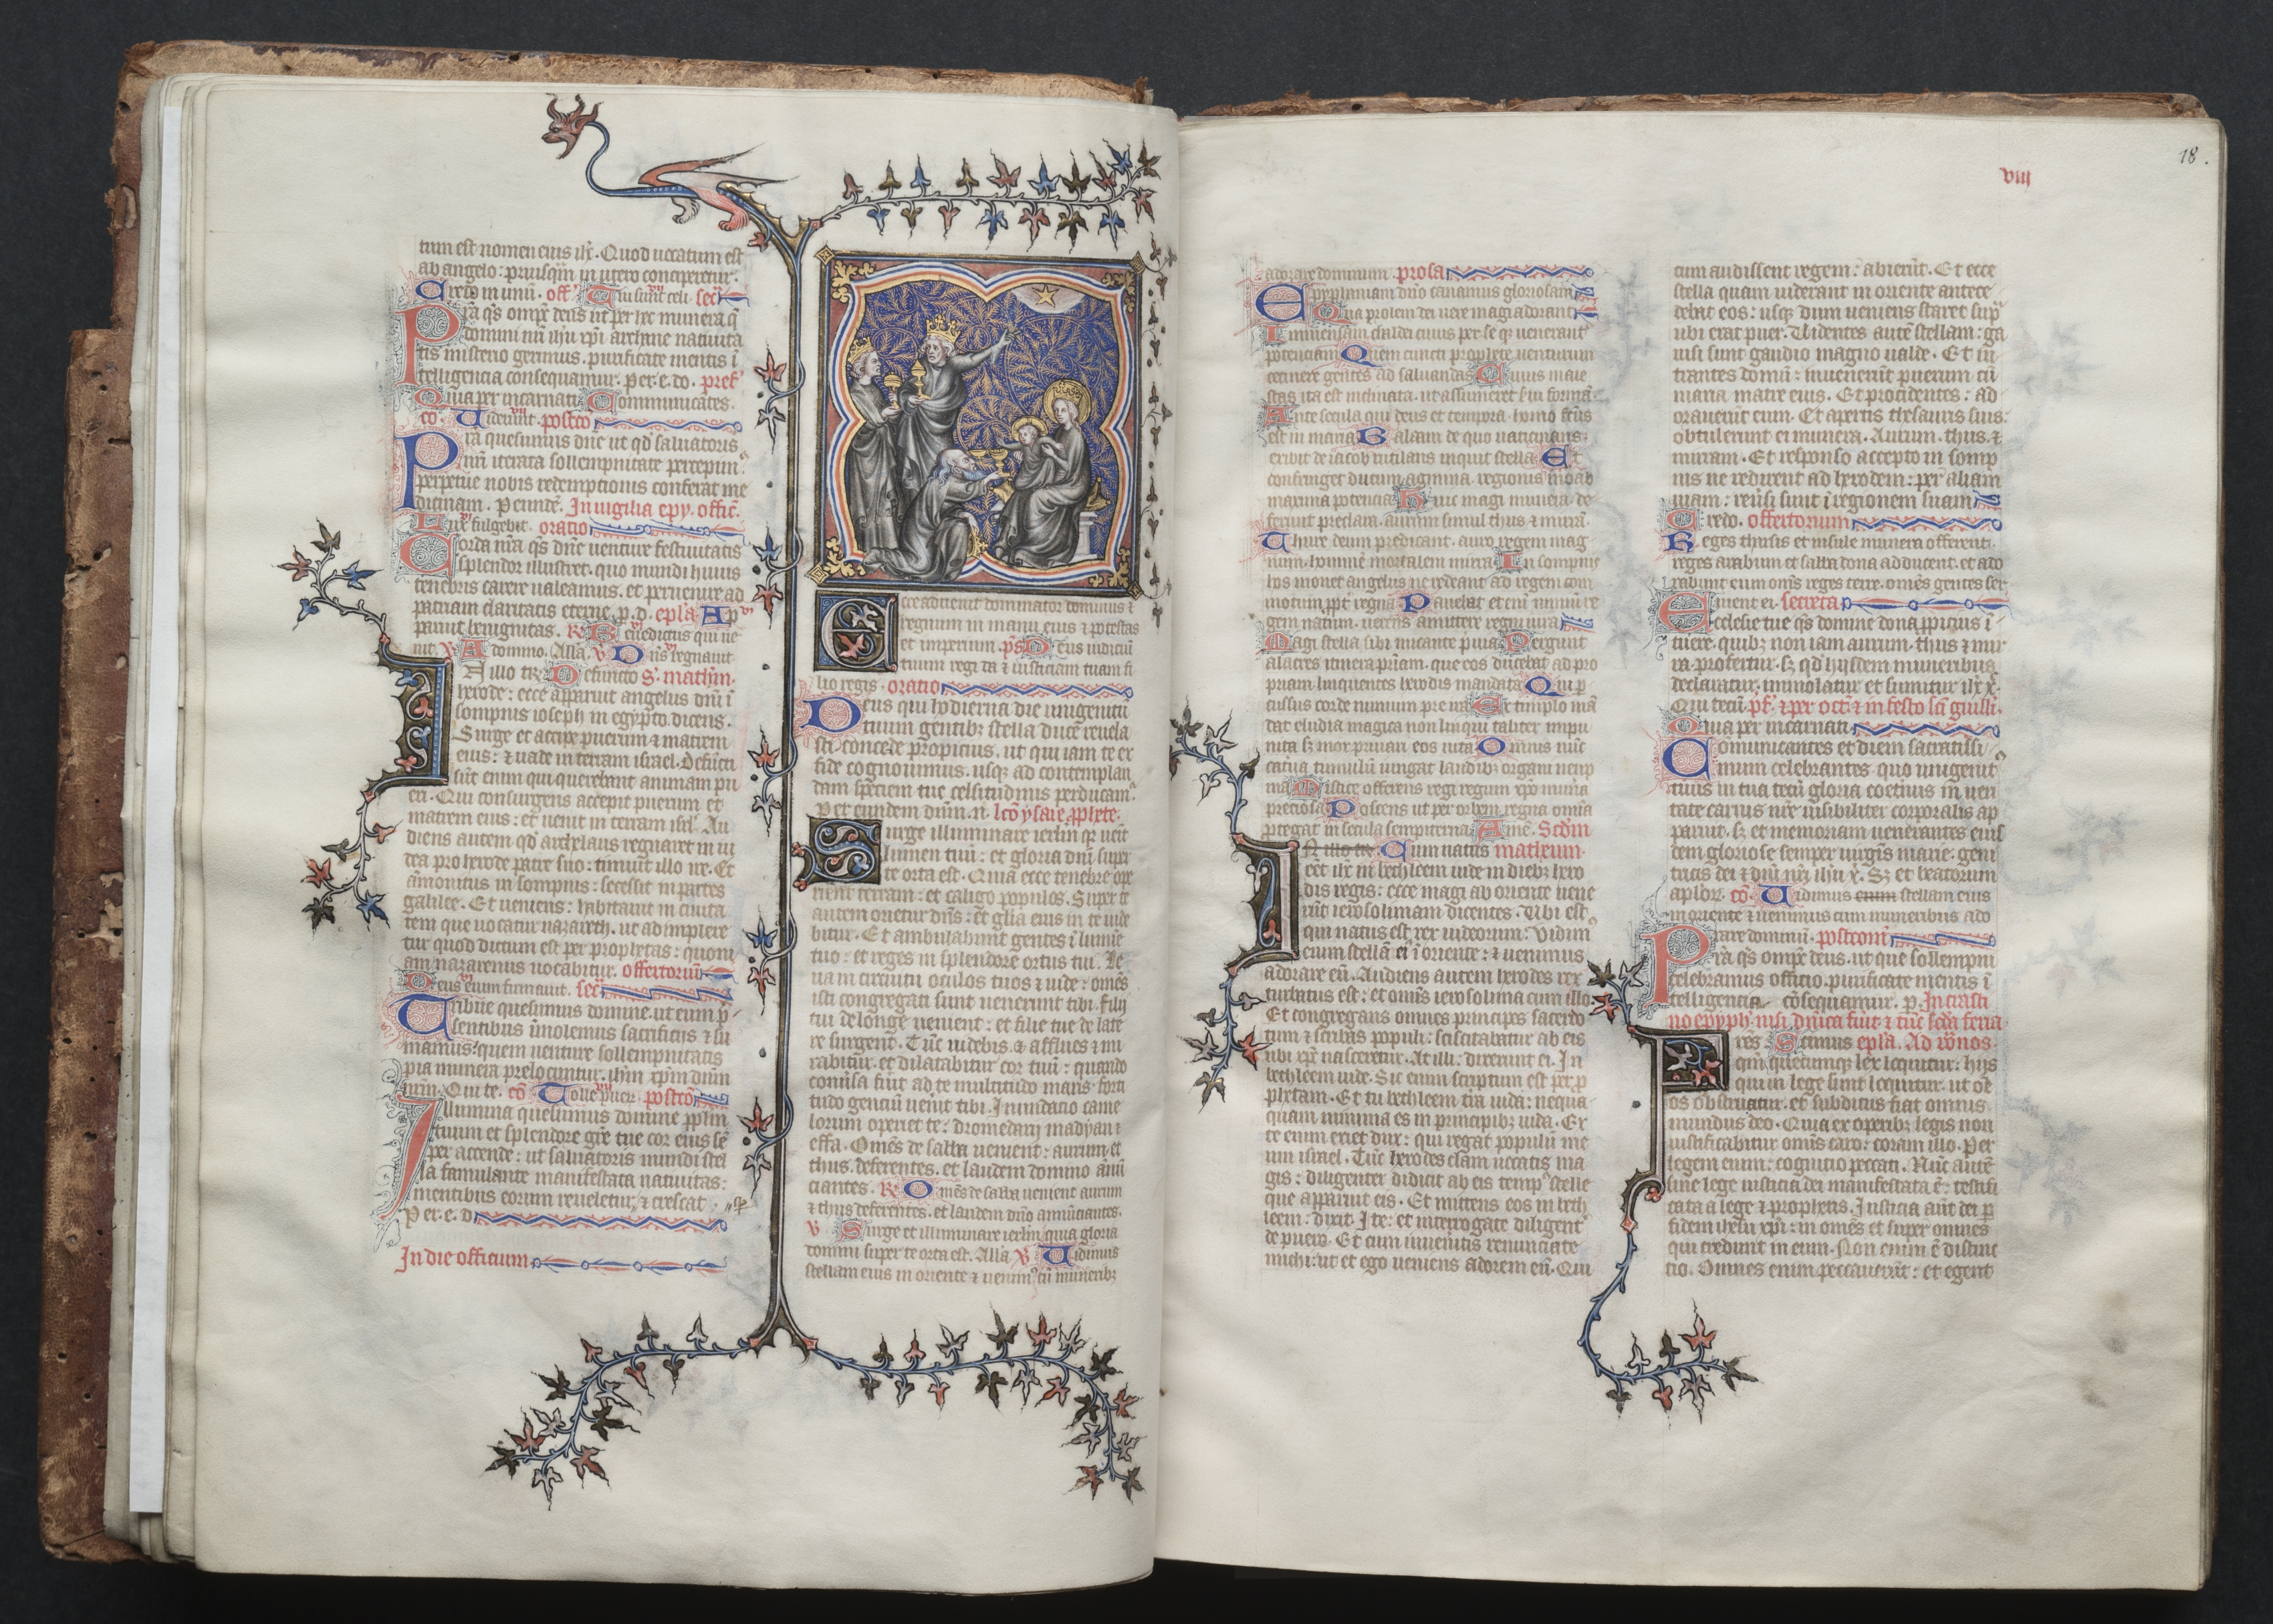 The Gotha Missal:  Fol. 18r, Text